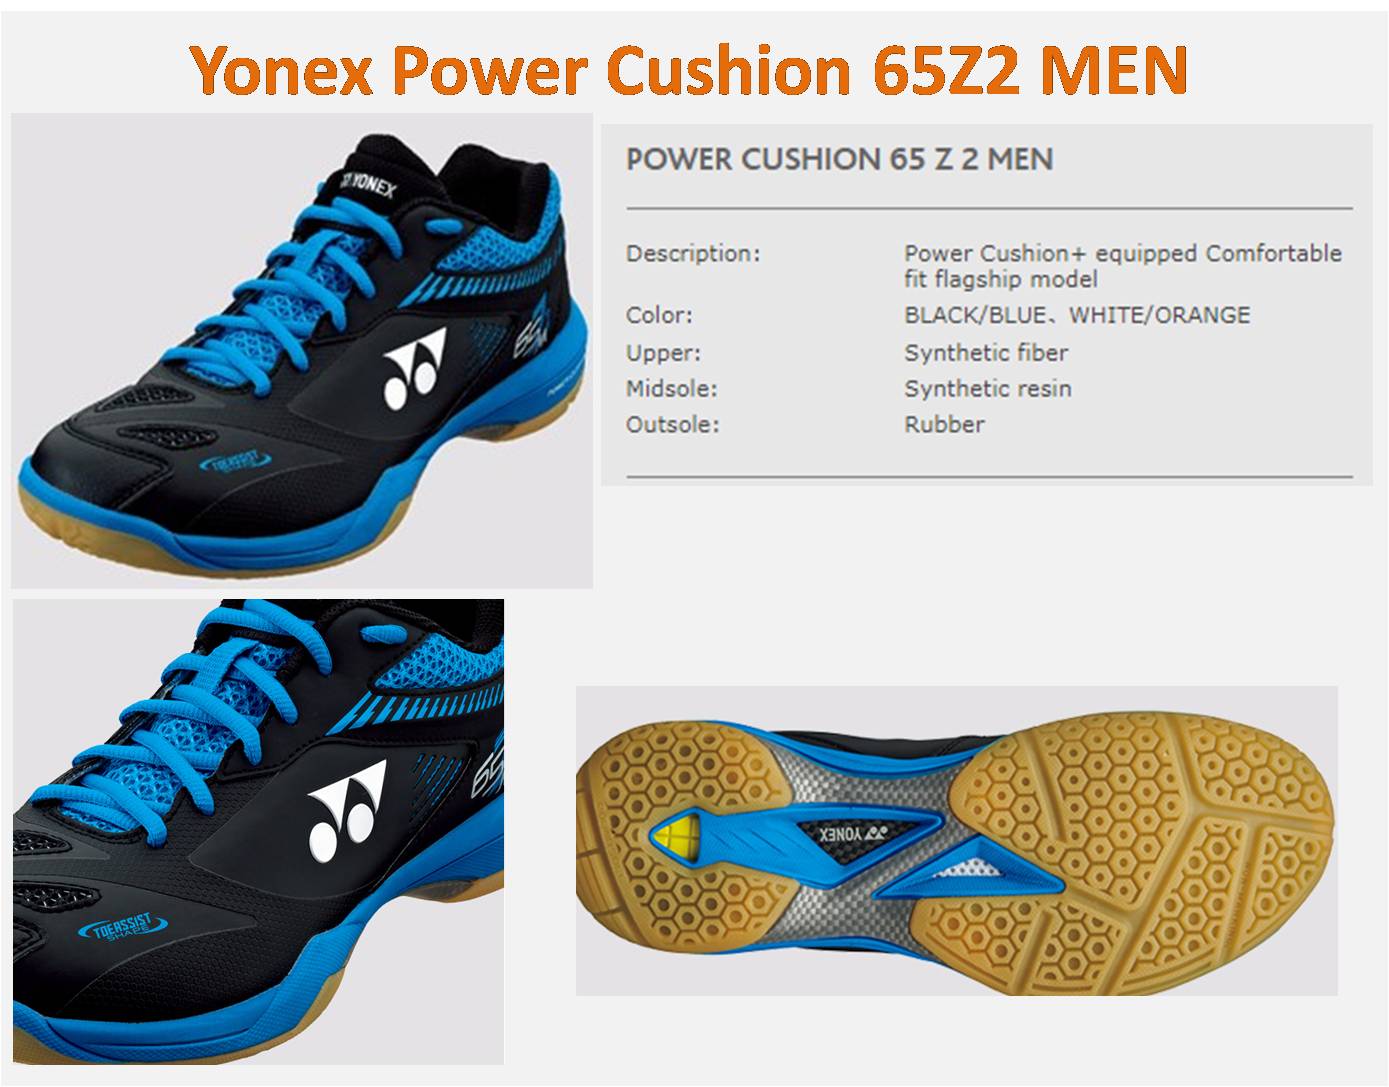  Yonex_power_Cushion_Comfort_65Z2_men_details 